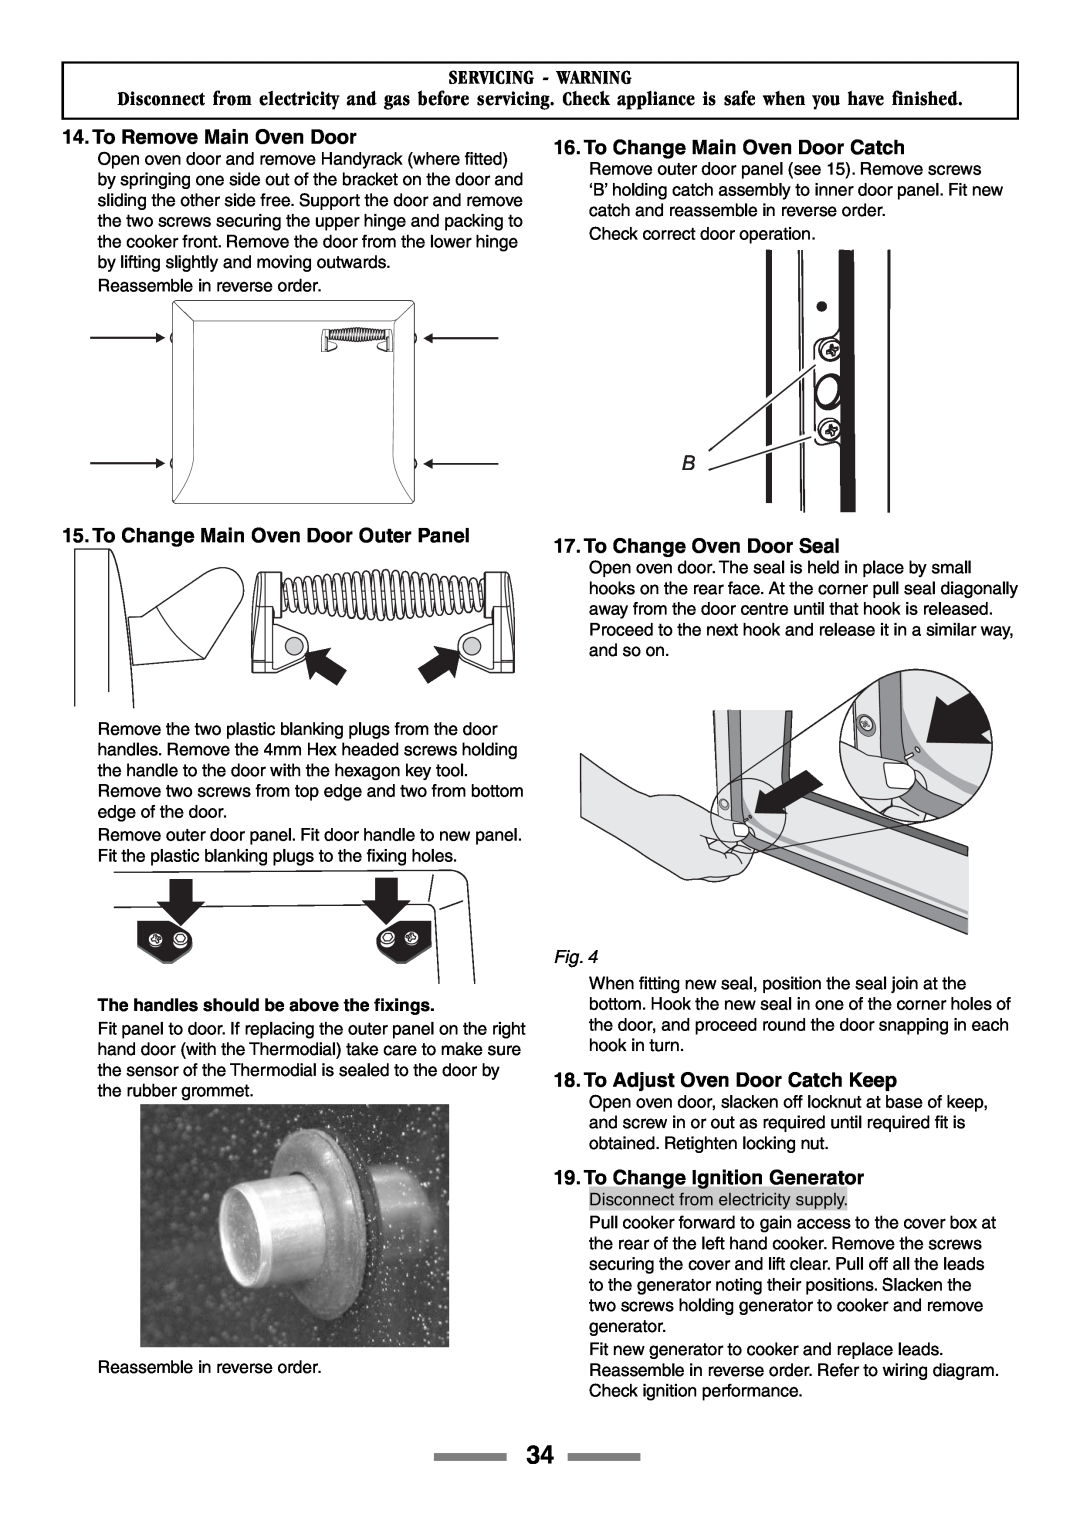 Rangemaster 90 manual To Remove Main Oven Door, To Change Main Oven Door Outer Panel, To Change Main Oven Door Catch 